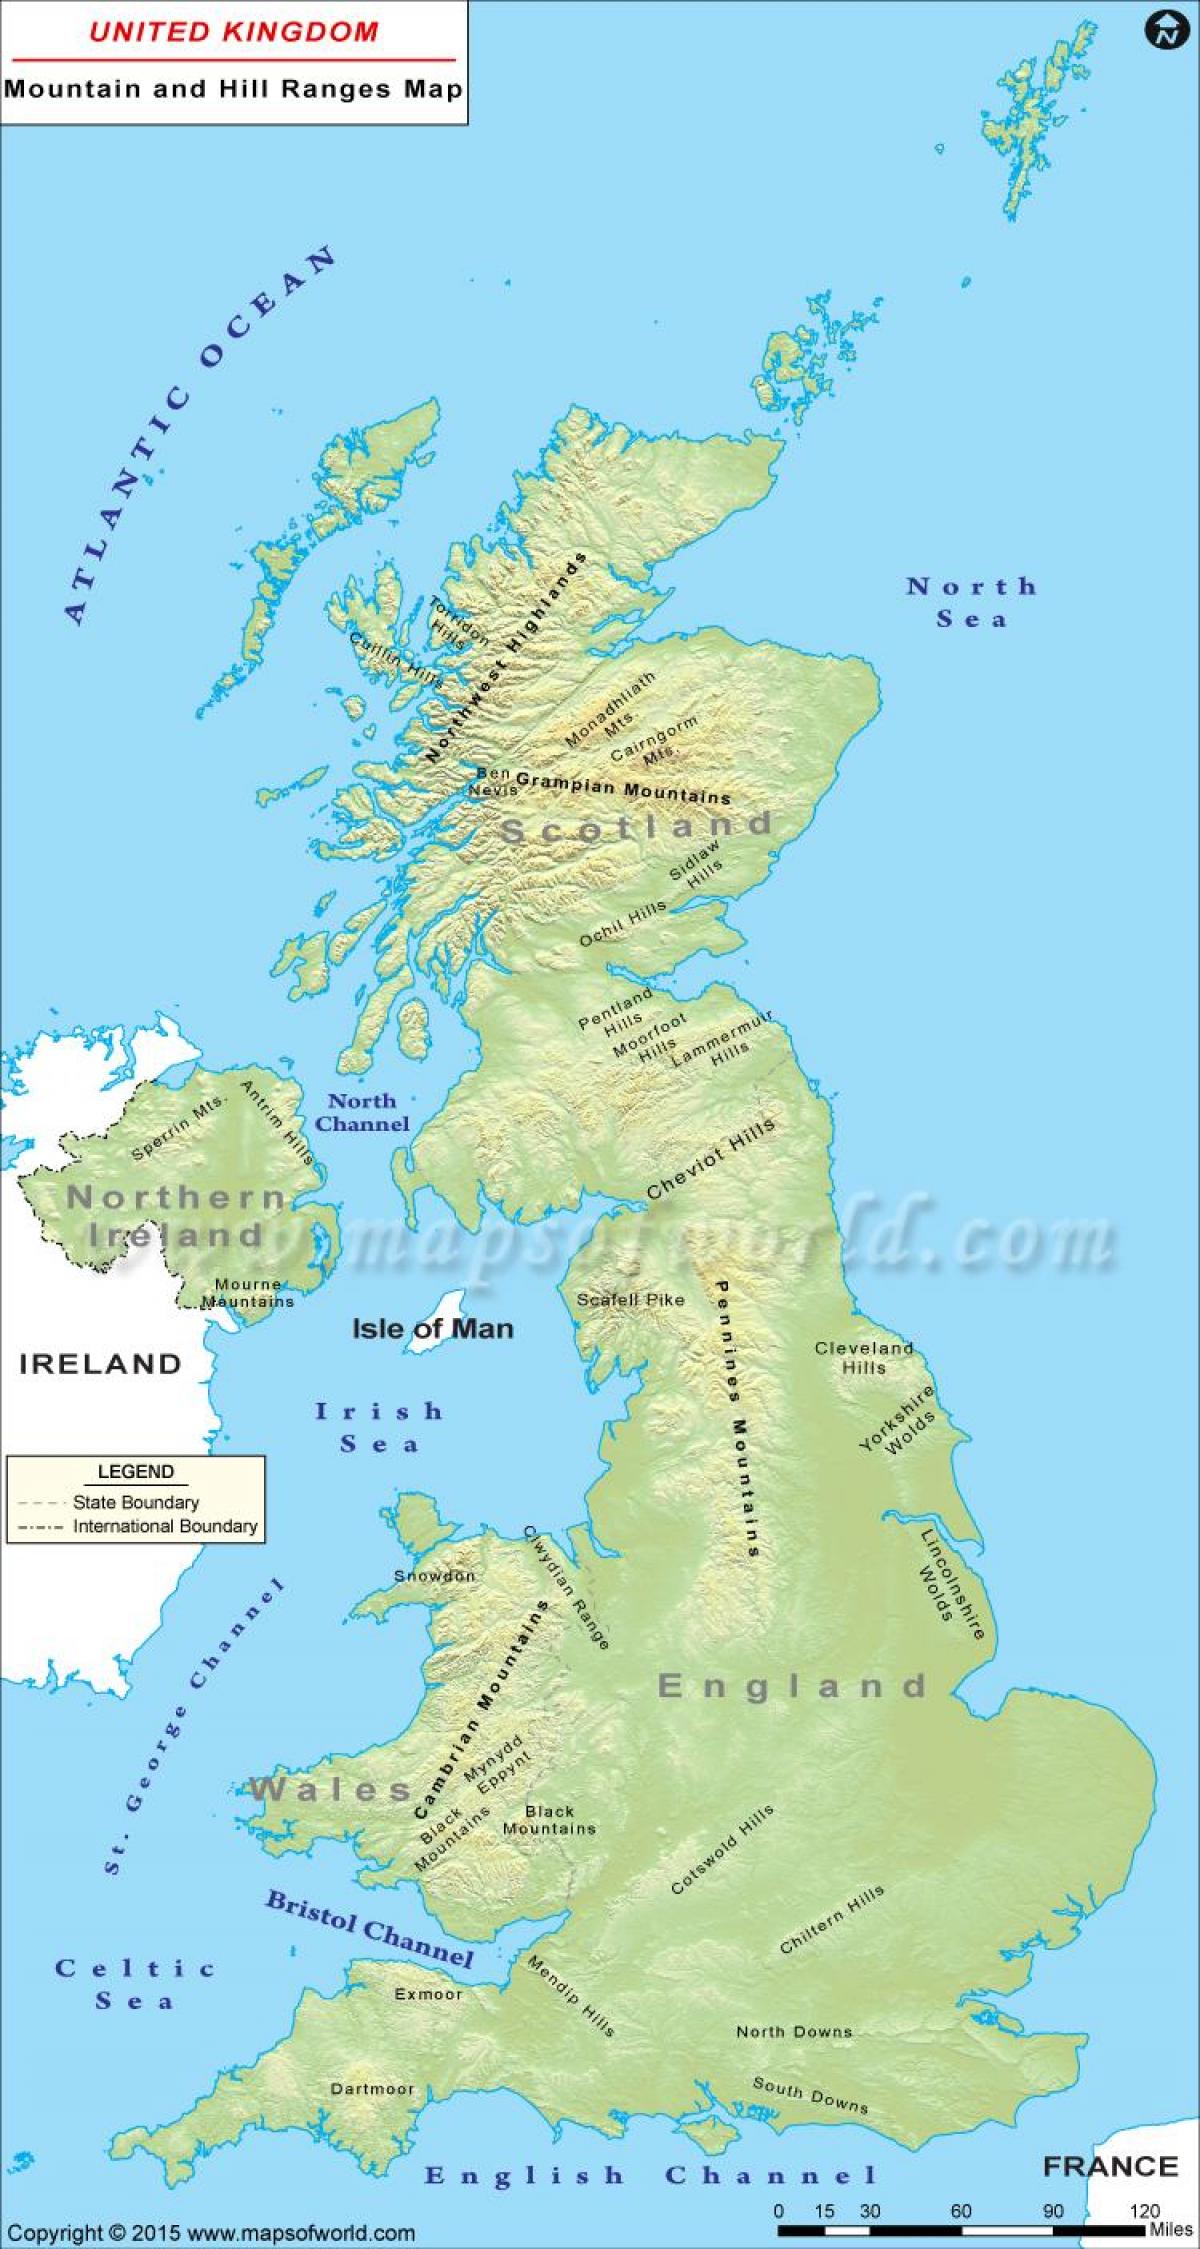 UK mountain ranges map